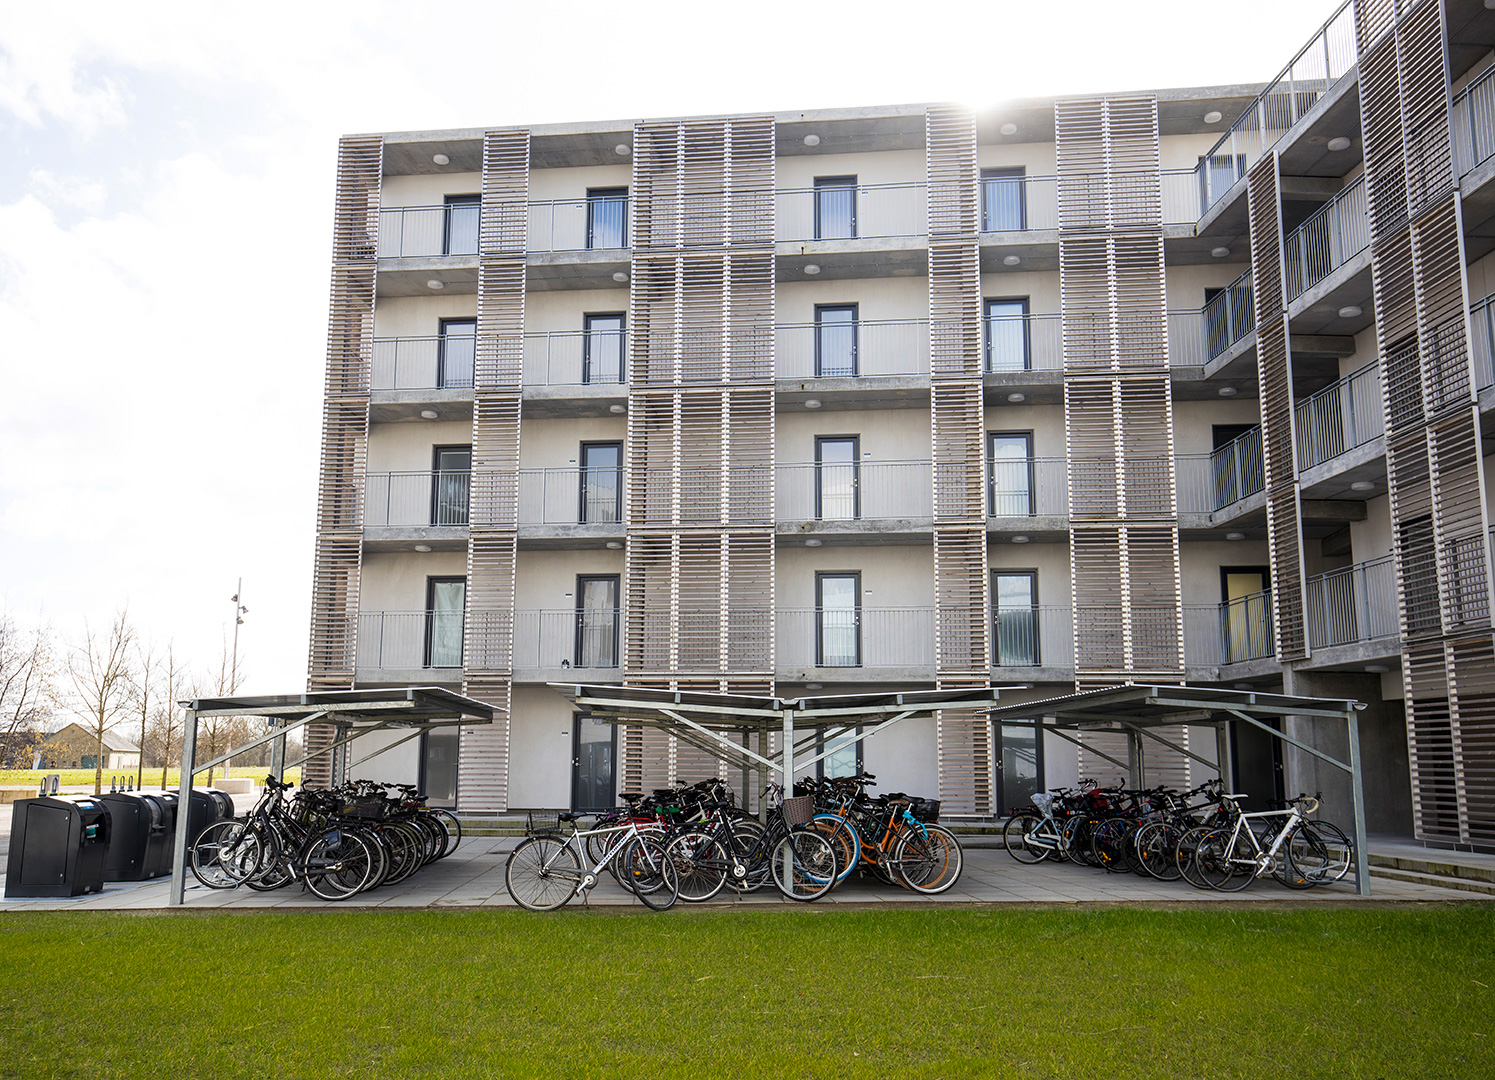 Bike shelter for housing associations